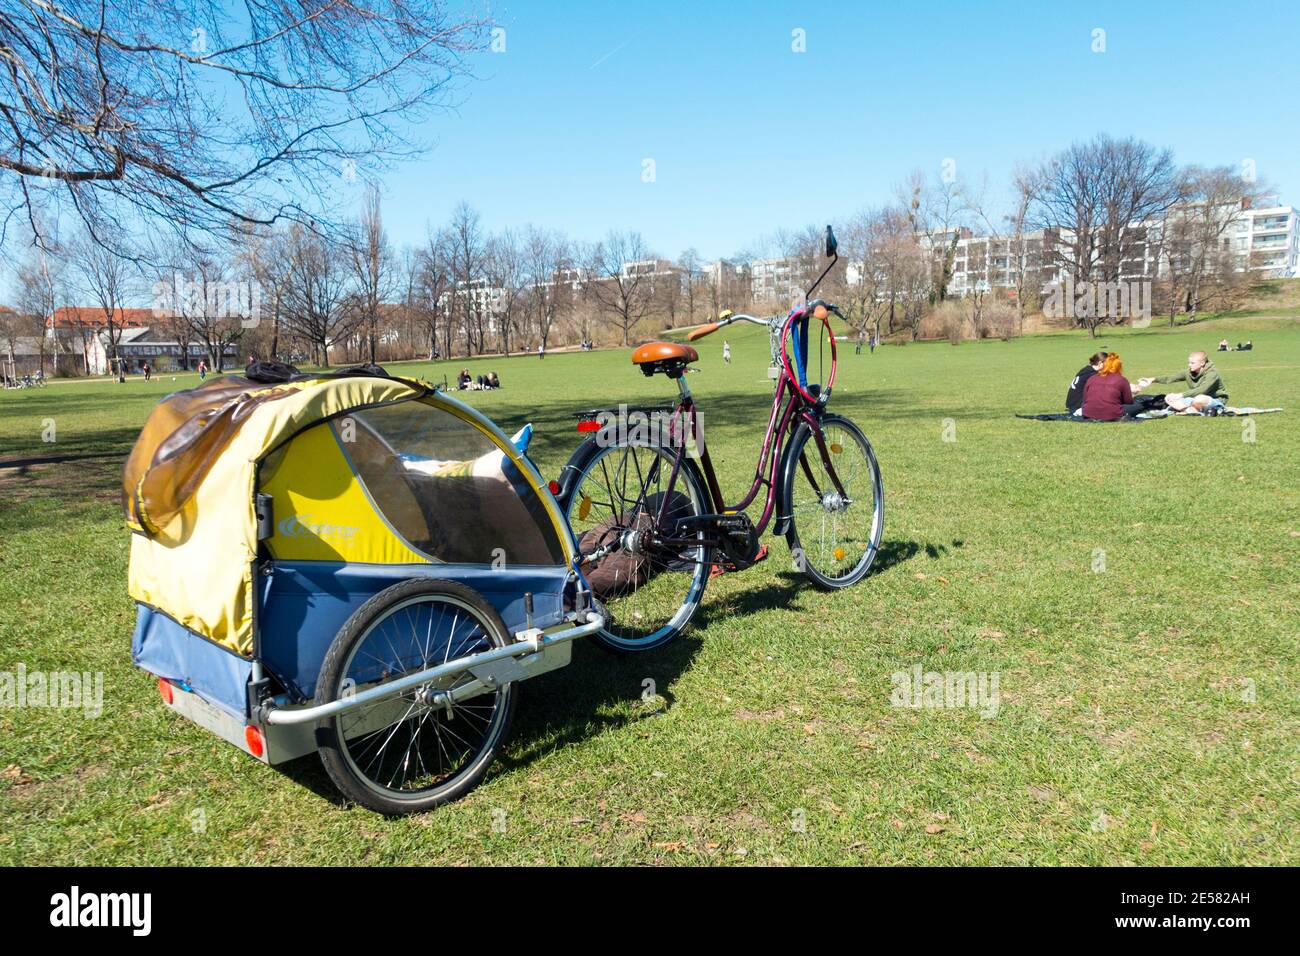 Remorque de vélo dans le parc Alaunplatz, Dresde Neustadt Allemagne, Europe remorque de vélo, transporteur Banque D'Images